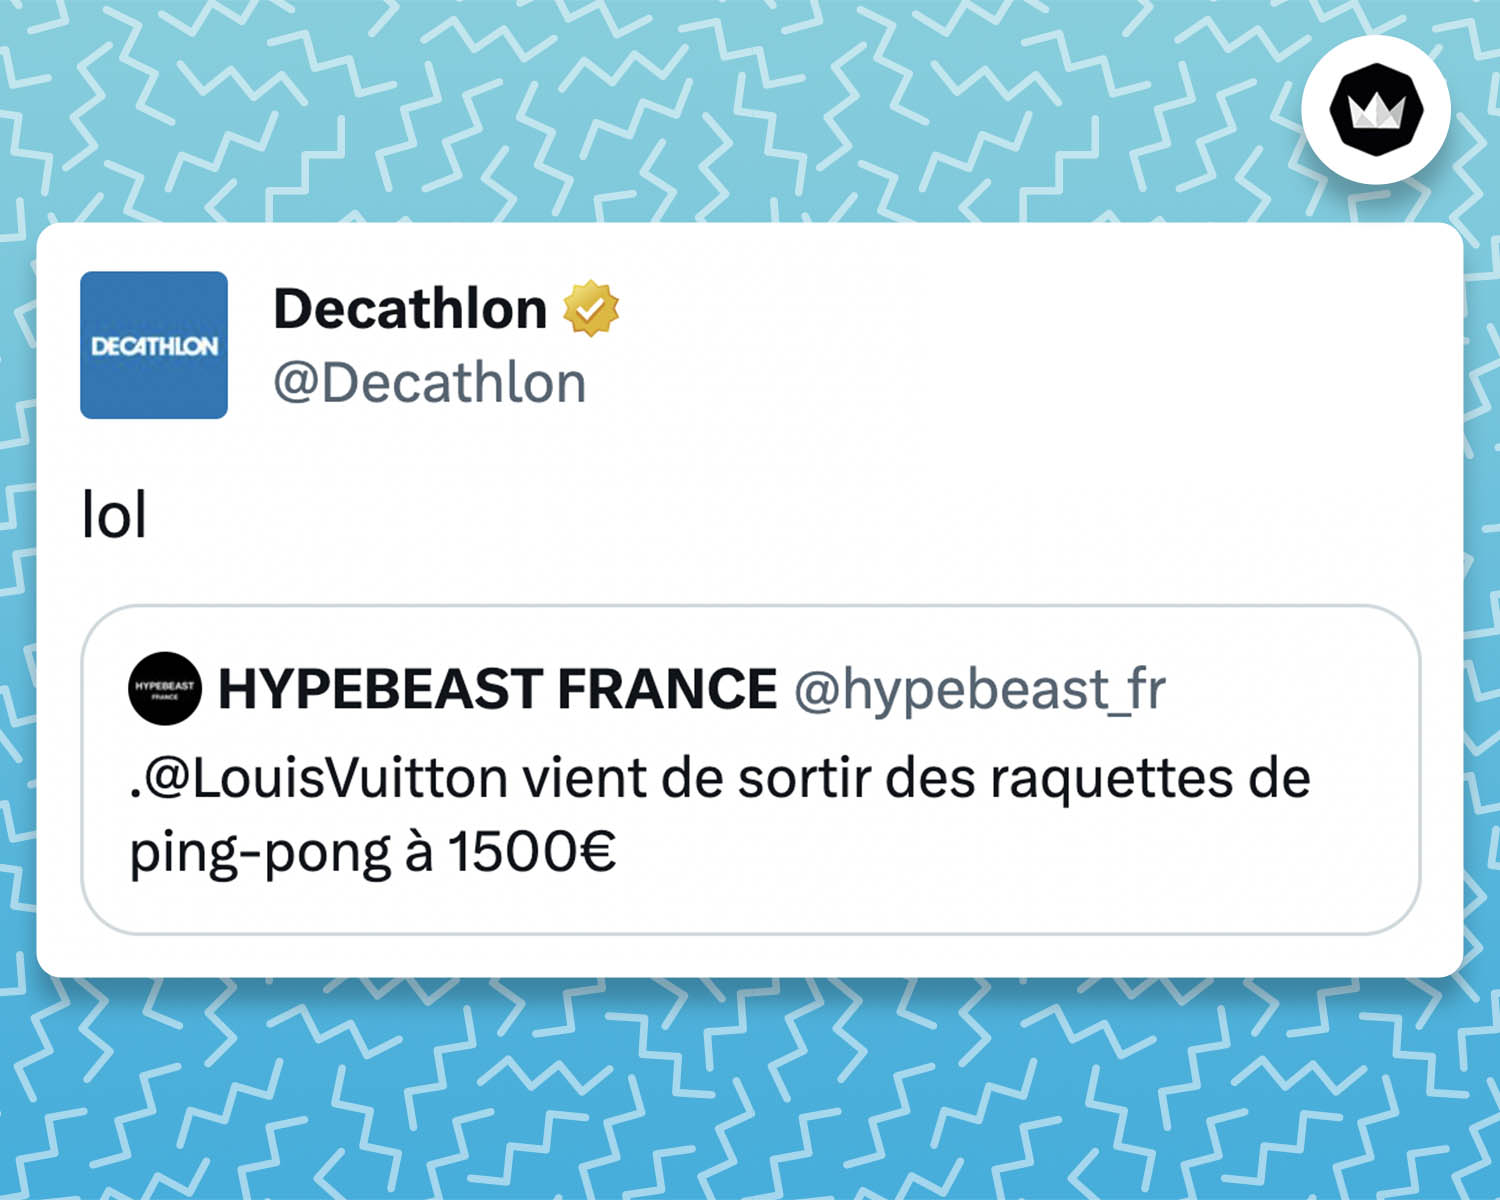 Tweet de Décathlon : 
"lol"

La marque répond à une annonce : @LouisVuitton vient de sortir des raquettes de ping-pong à 1500€ 